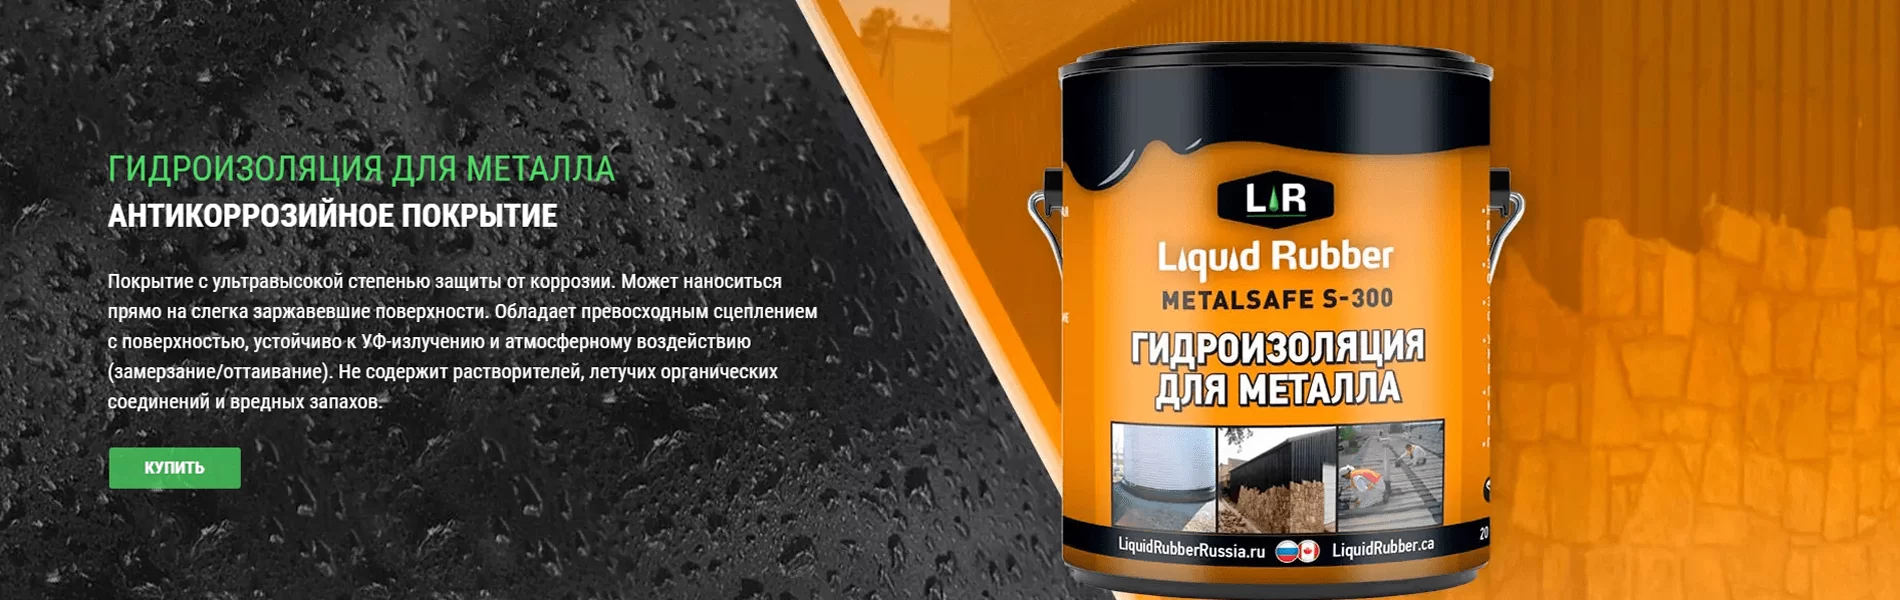 Жидкая резина Metal Safe S-300 антикоррозийное и гидроизоляционное покрытие для металла